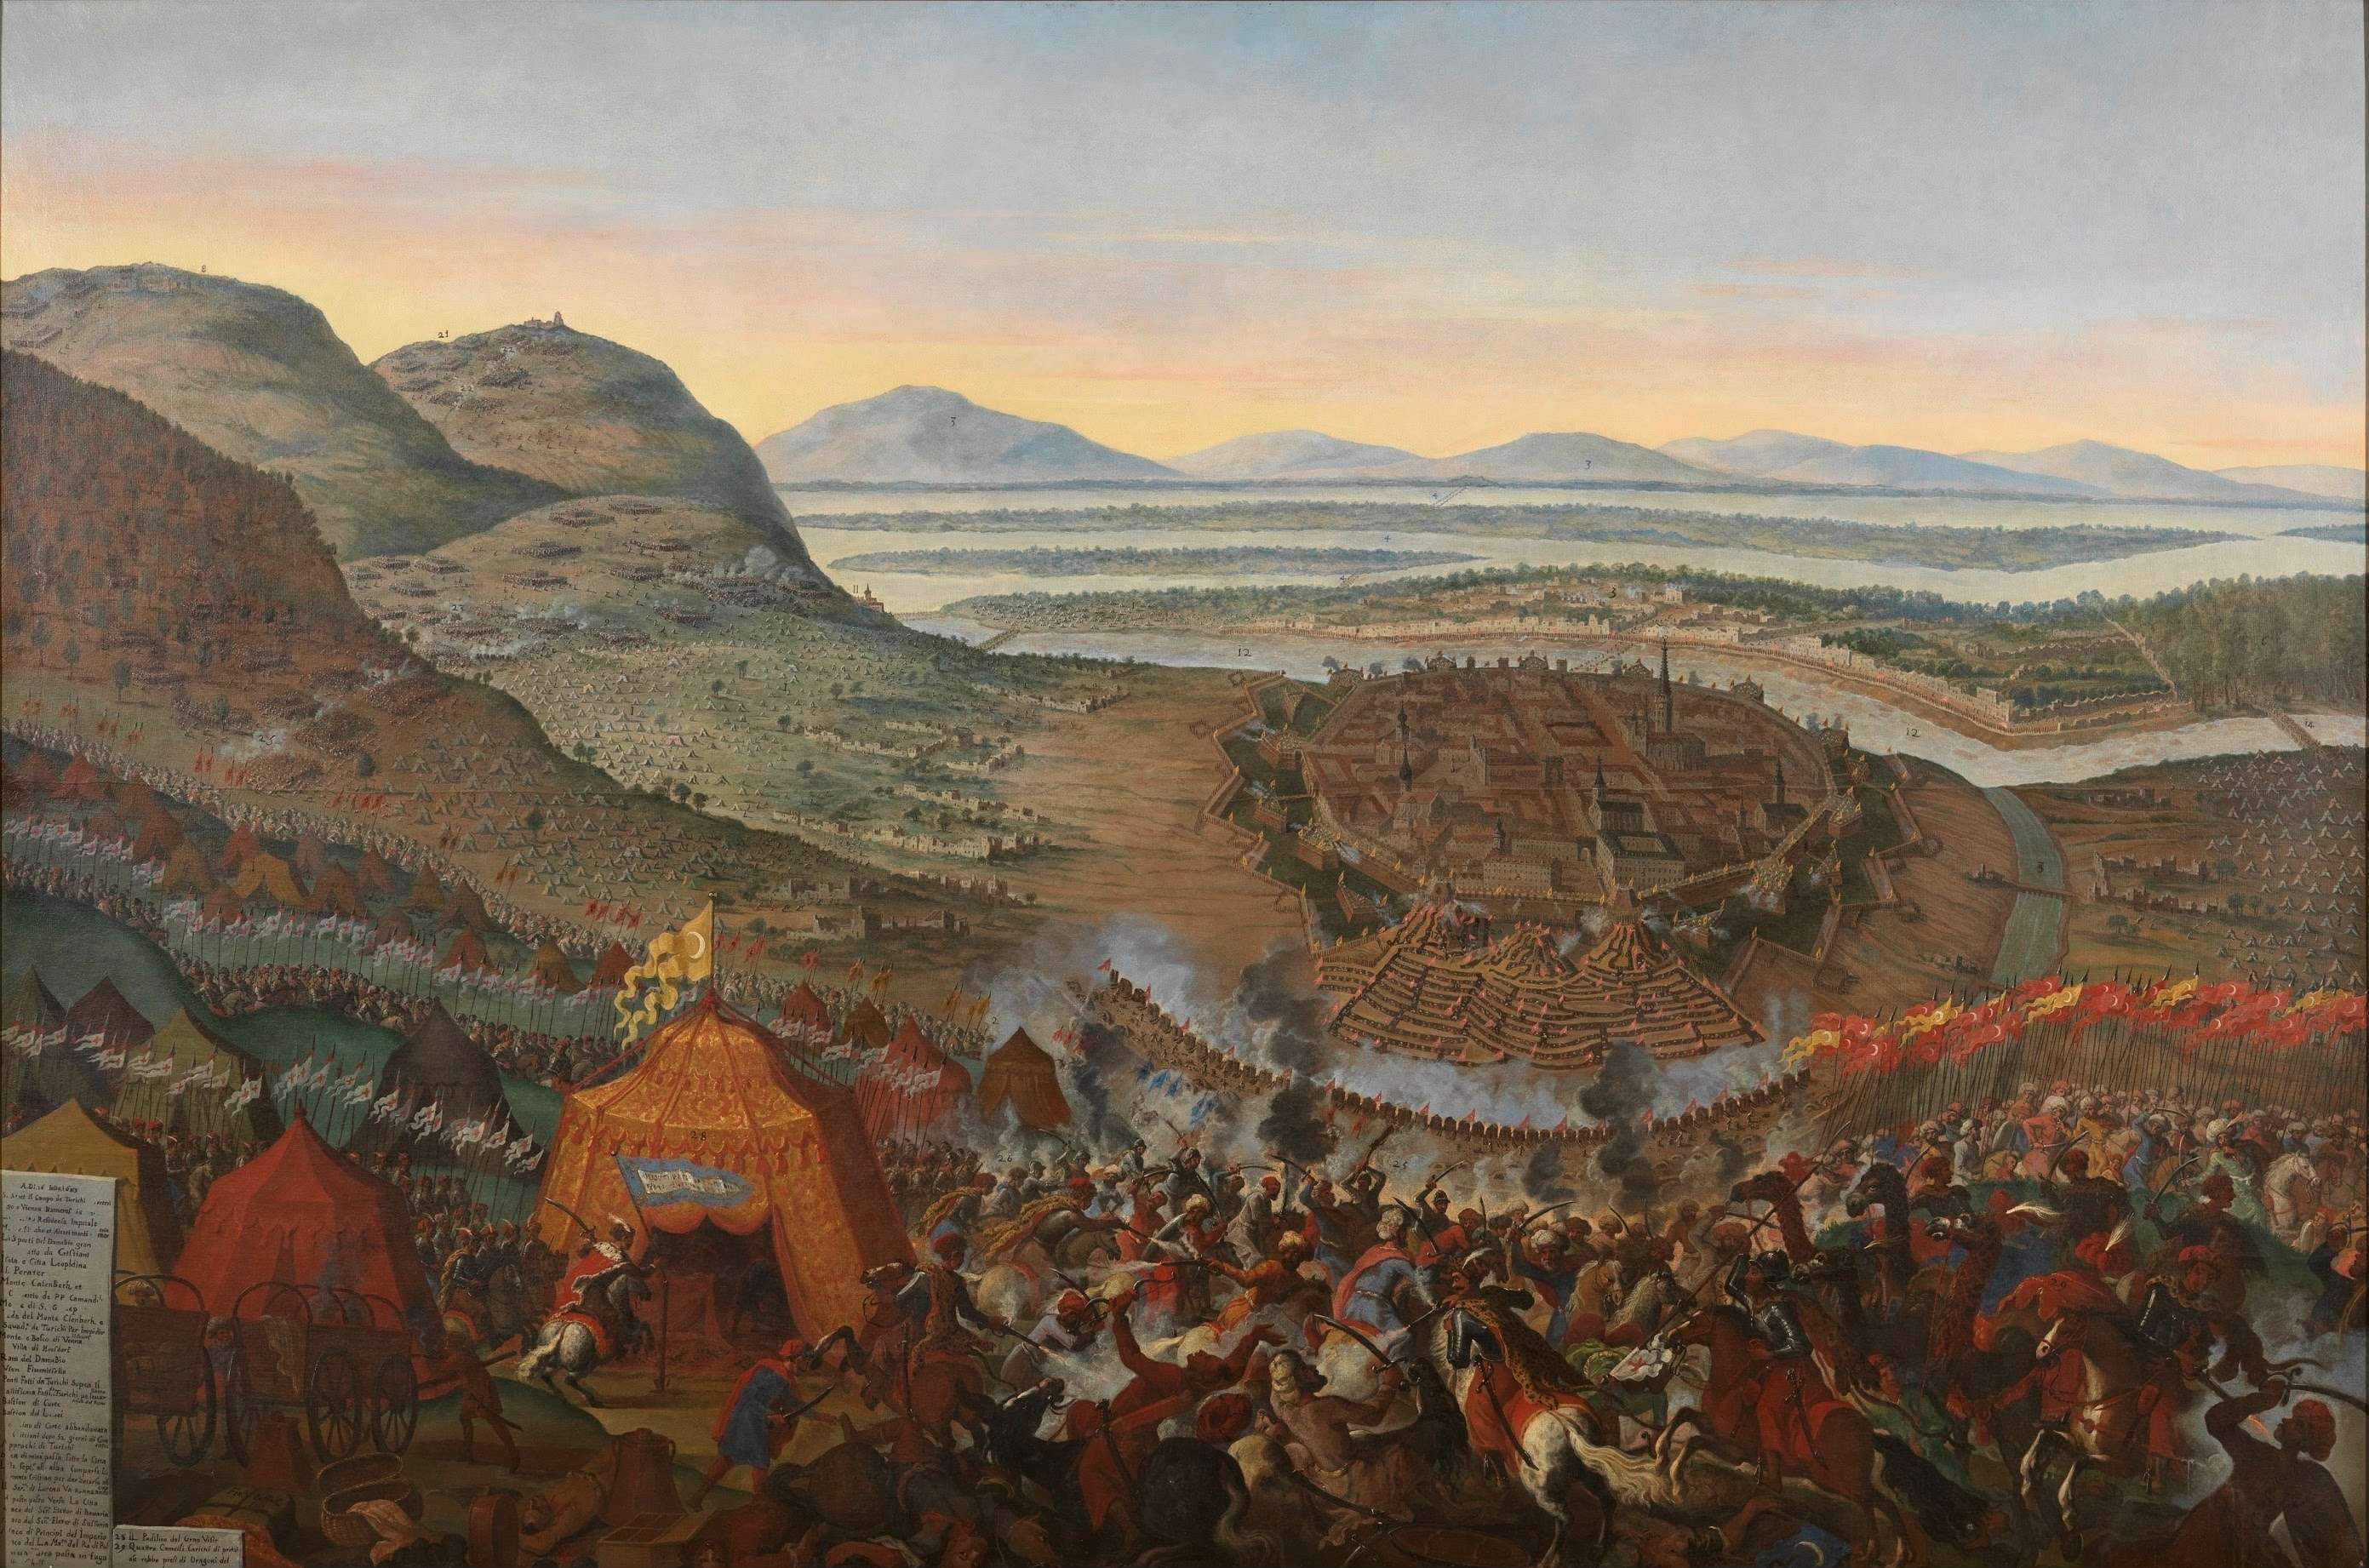 Η δεύτερη πολιορκία της Βιέννης από τους Τούρκους ήταν σημαντικός σταθμός στην γεωπολιτική εξέλιξη της Ευρώπης. Η Βιέννη πολιορκήθηκε από τους Τούρκους και γλύτωσε κυριολεκτικά την τελευταία στιγμή ως από θαύμα, ενώ η επίθεση των Ουσάρων του Γιάν Σομπιέσκι απέκρουσε τους Οθωμανούς και τους έτρεψε σε φυγή.